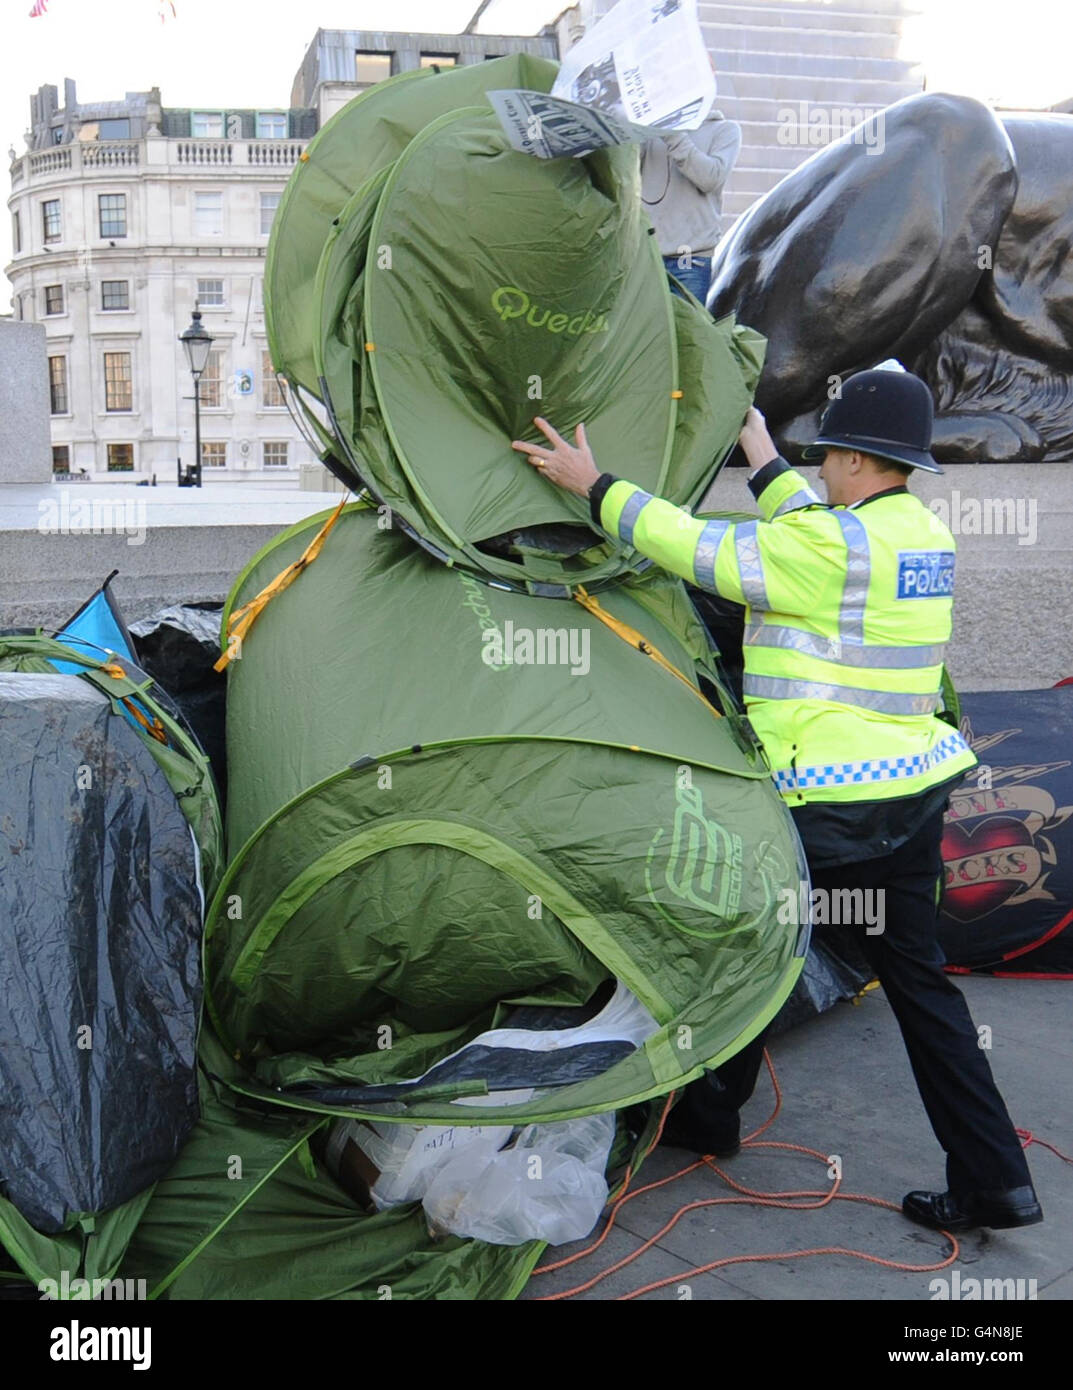 Ein Polizist entfernt ein Zelt, das während des letzten studentengeldes marsches von Demonstranten am Trafalgar Square in London als Teil eines Lagers aufgestellt wurde. Stockfoto